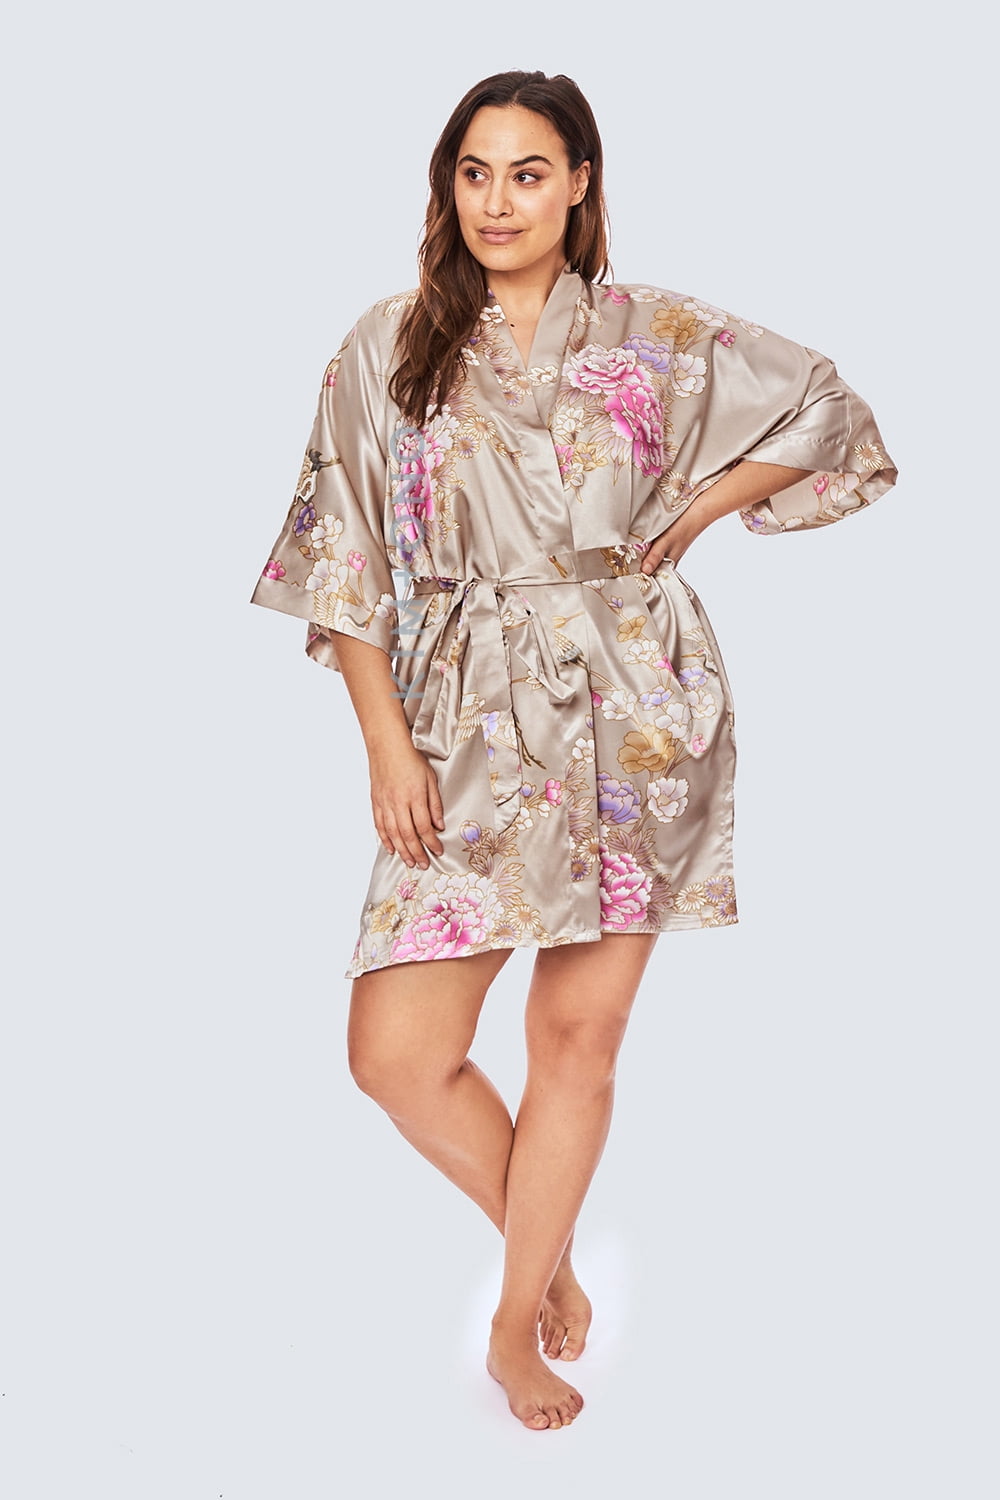 KIM+ONO Plus Size Women's Satin Kimono Robe Short Floral 